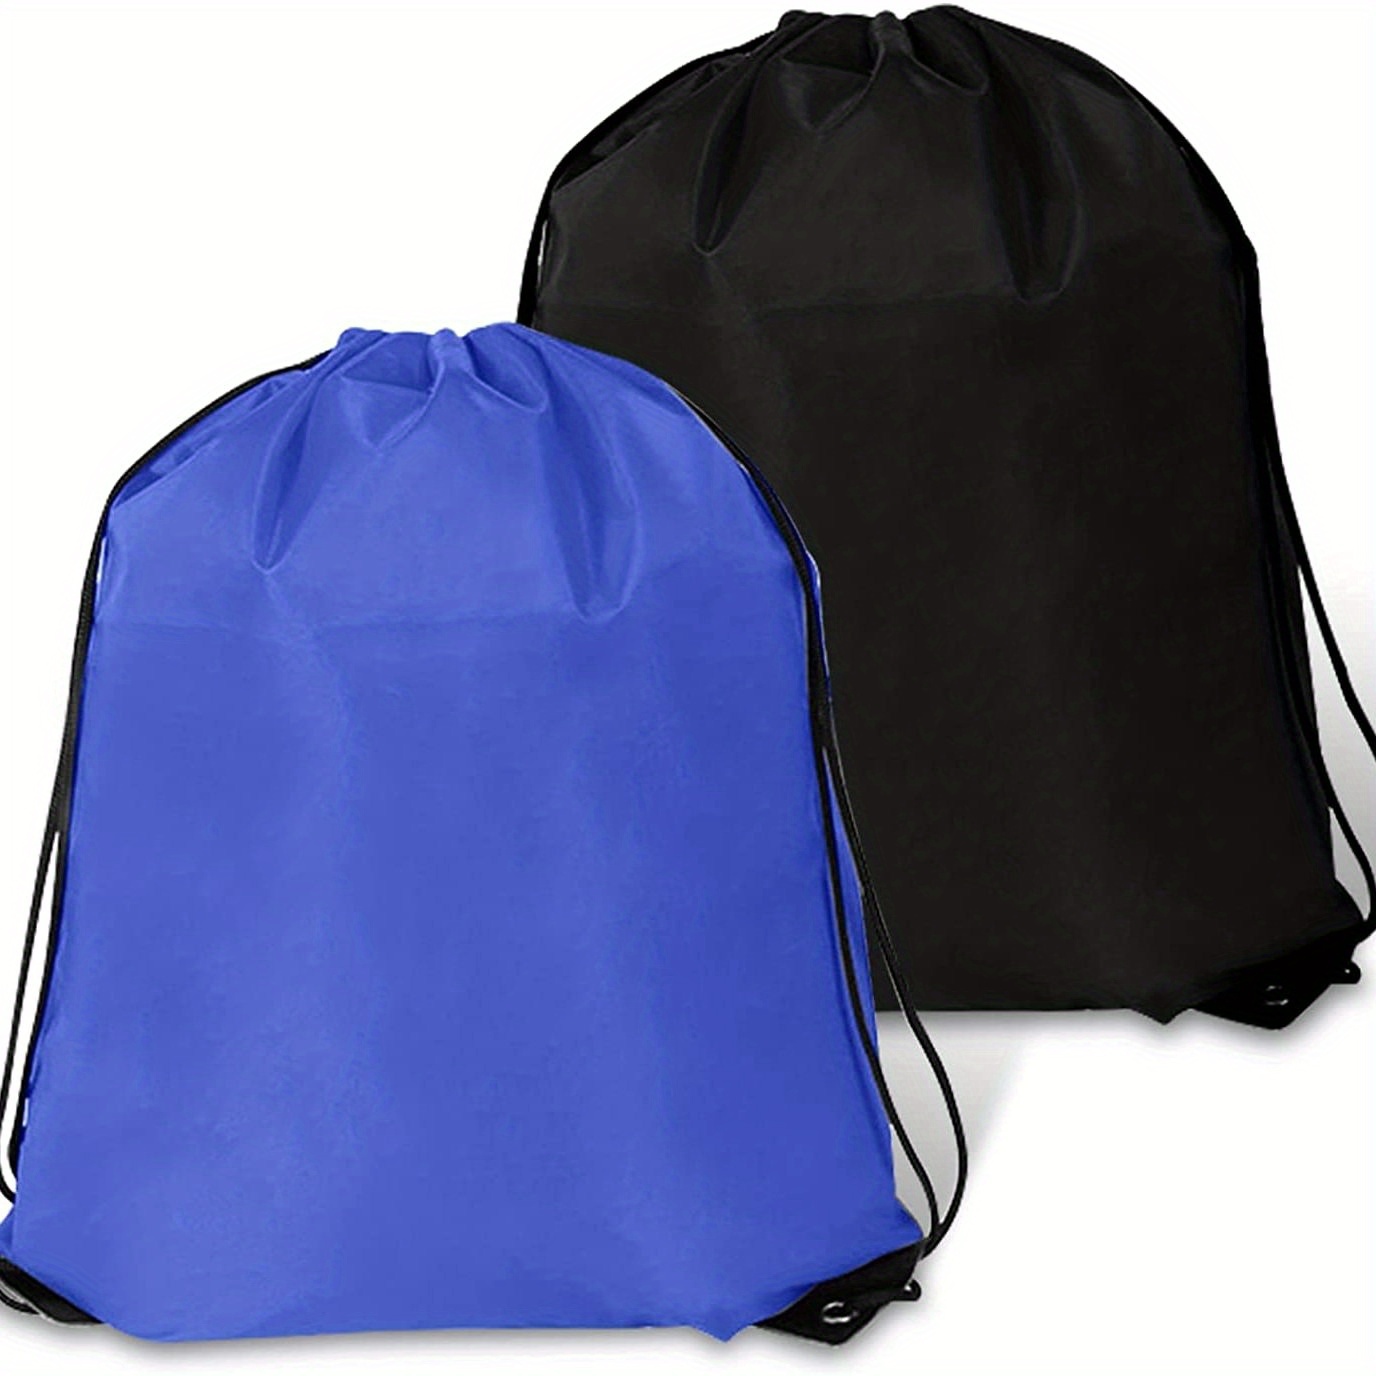 2 bolsas de mochila con cordón para deportes, gimnasio, bolsa de mano,  bolsa de mano a granel, bolsa de natación para mujeres y hombres,  azul+negro